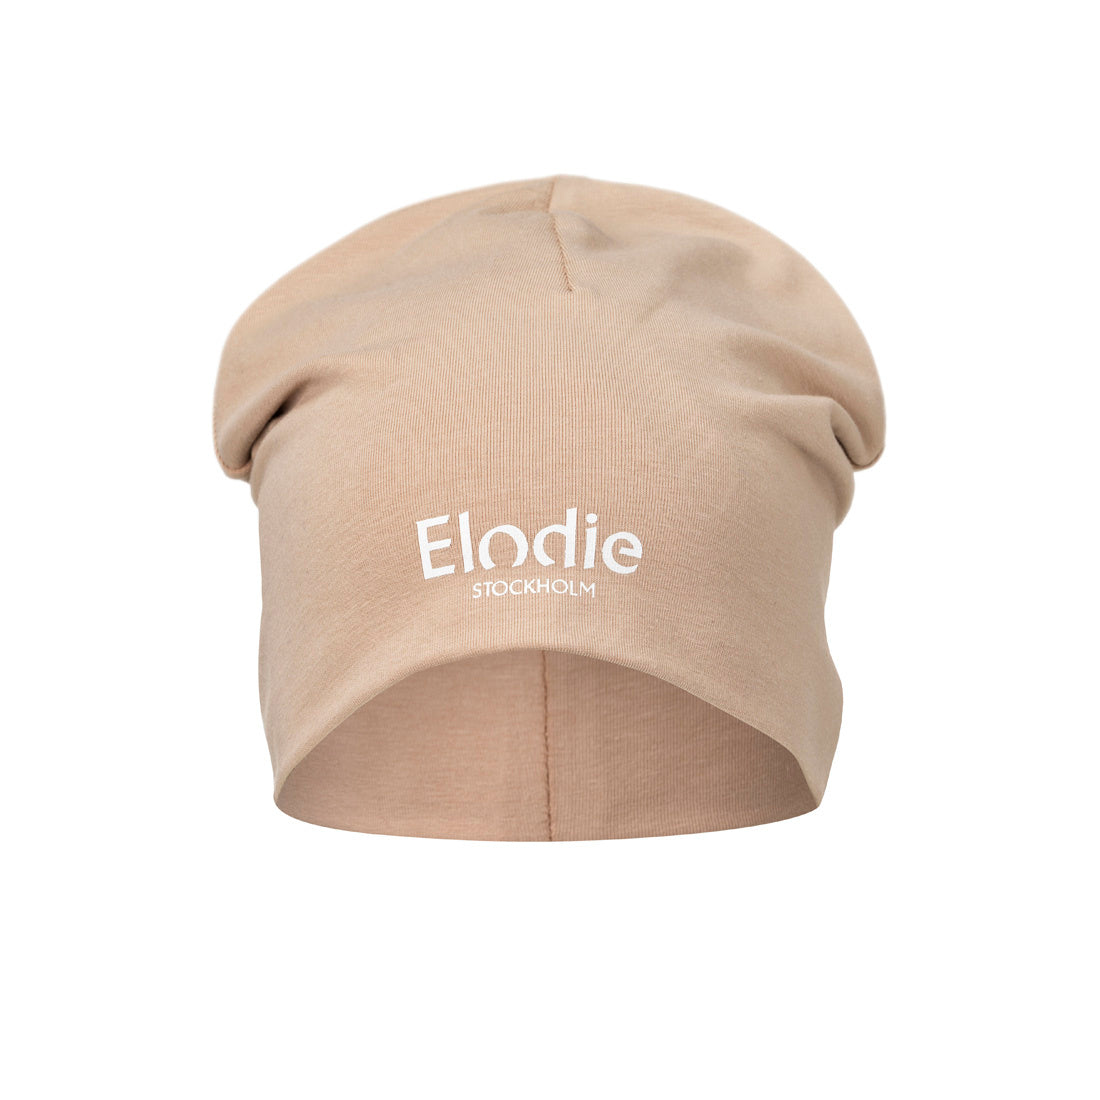 Czapka Elodie Details różowa, bawełniana, dla dzieci 0-6 m, komfortowa i oddychająca, certyfikat Oeko-Tex.